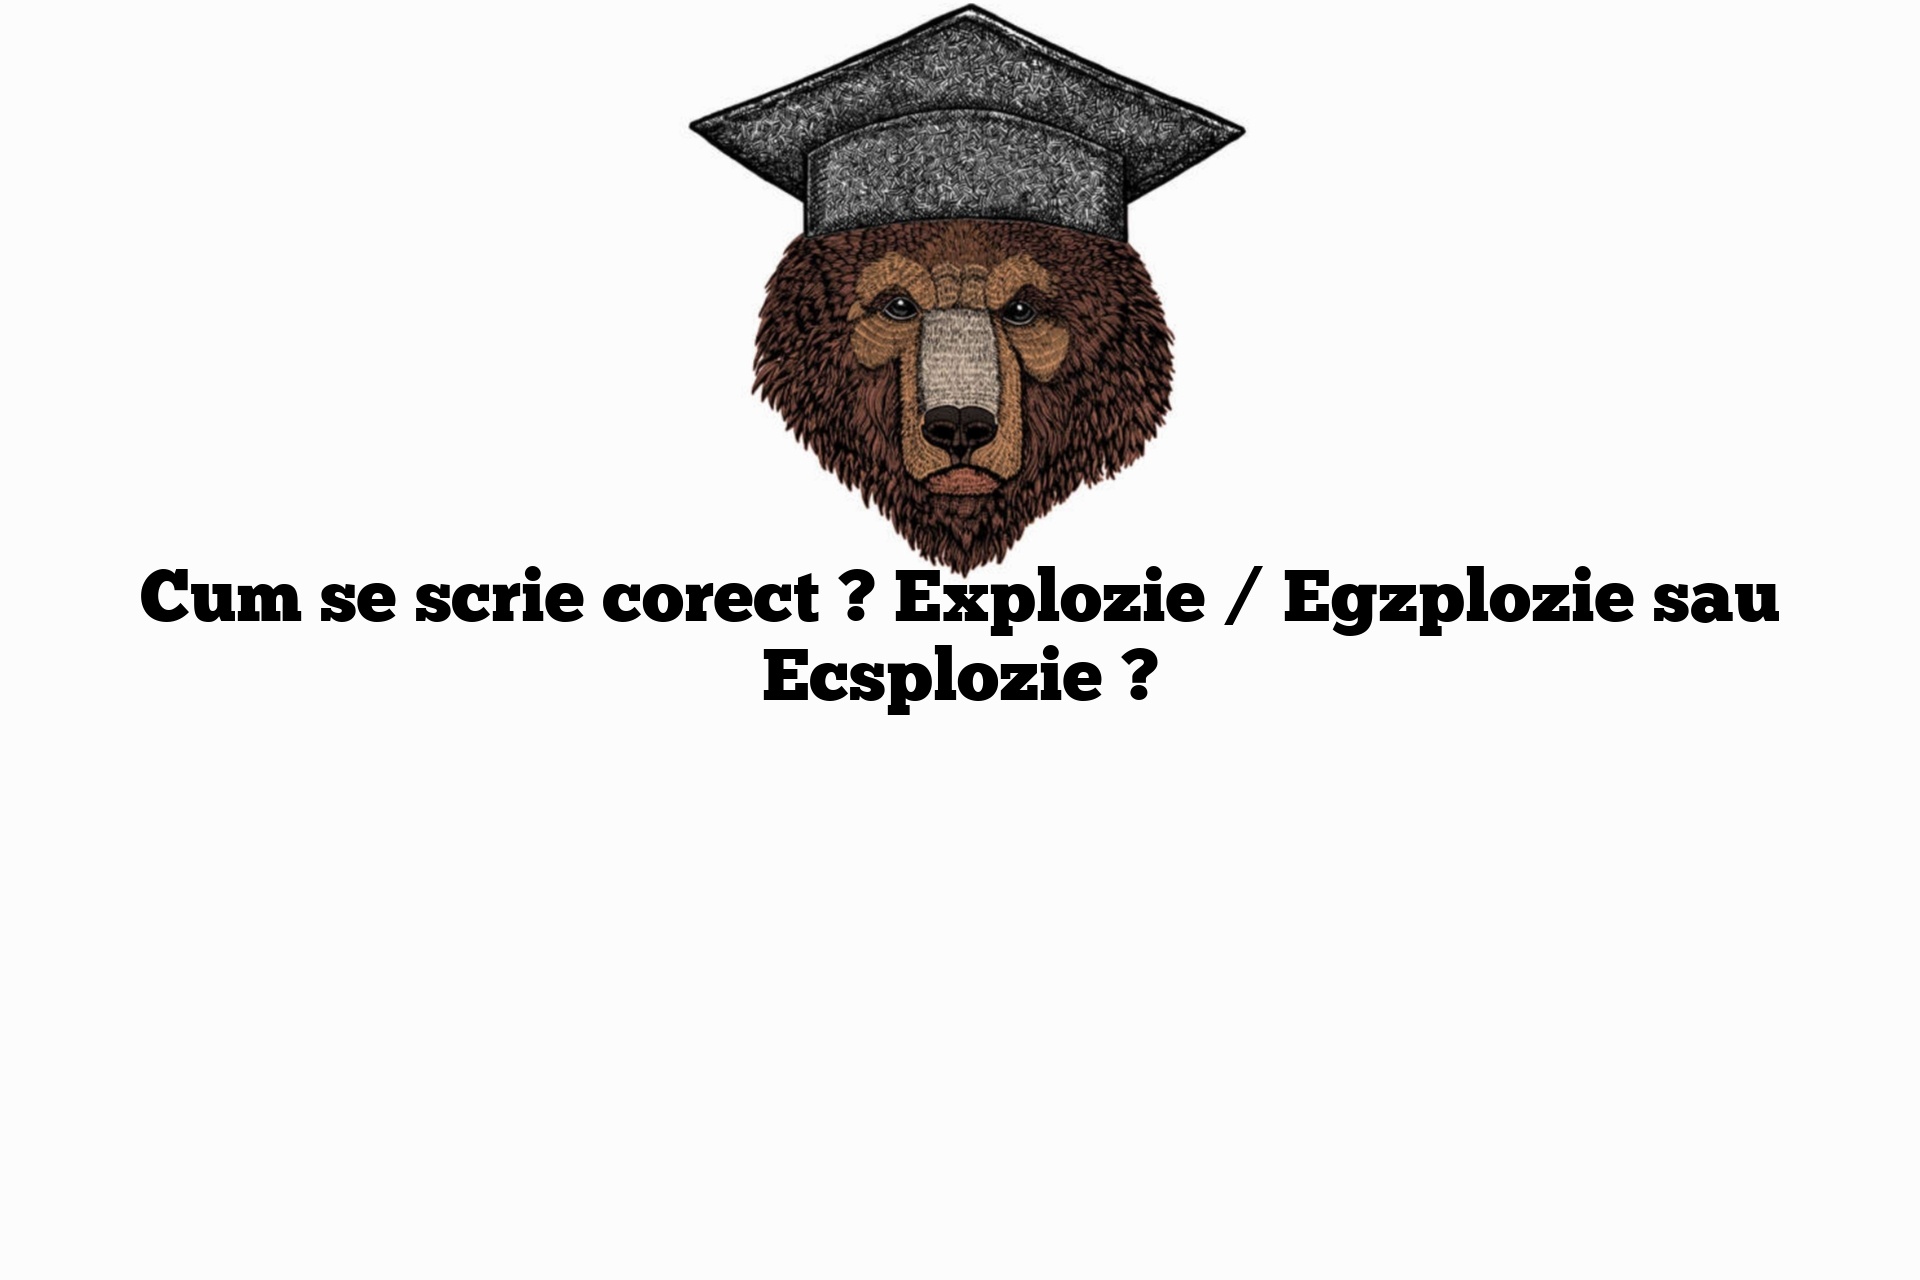 Cum se scrie corect ? Explozie / Egzplozie sau Ecsplozie ?